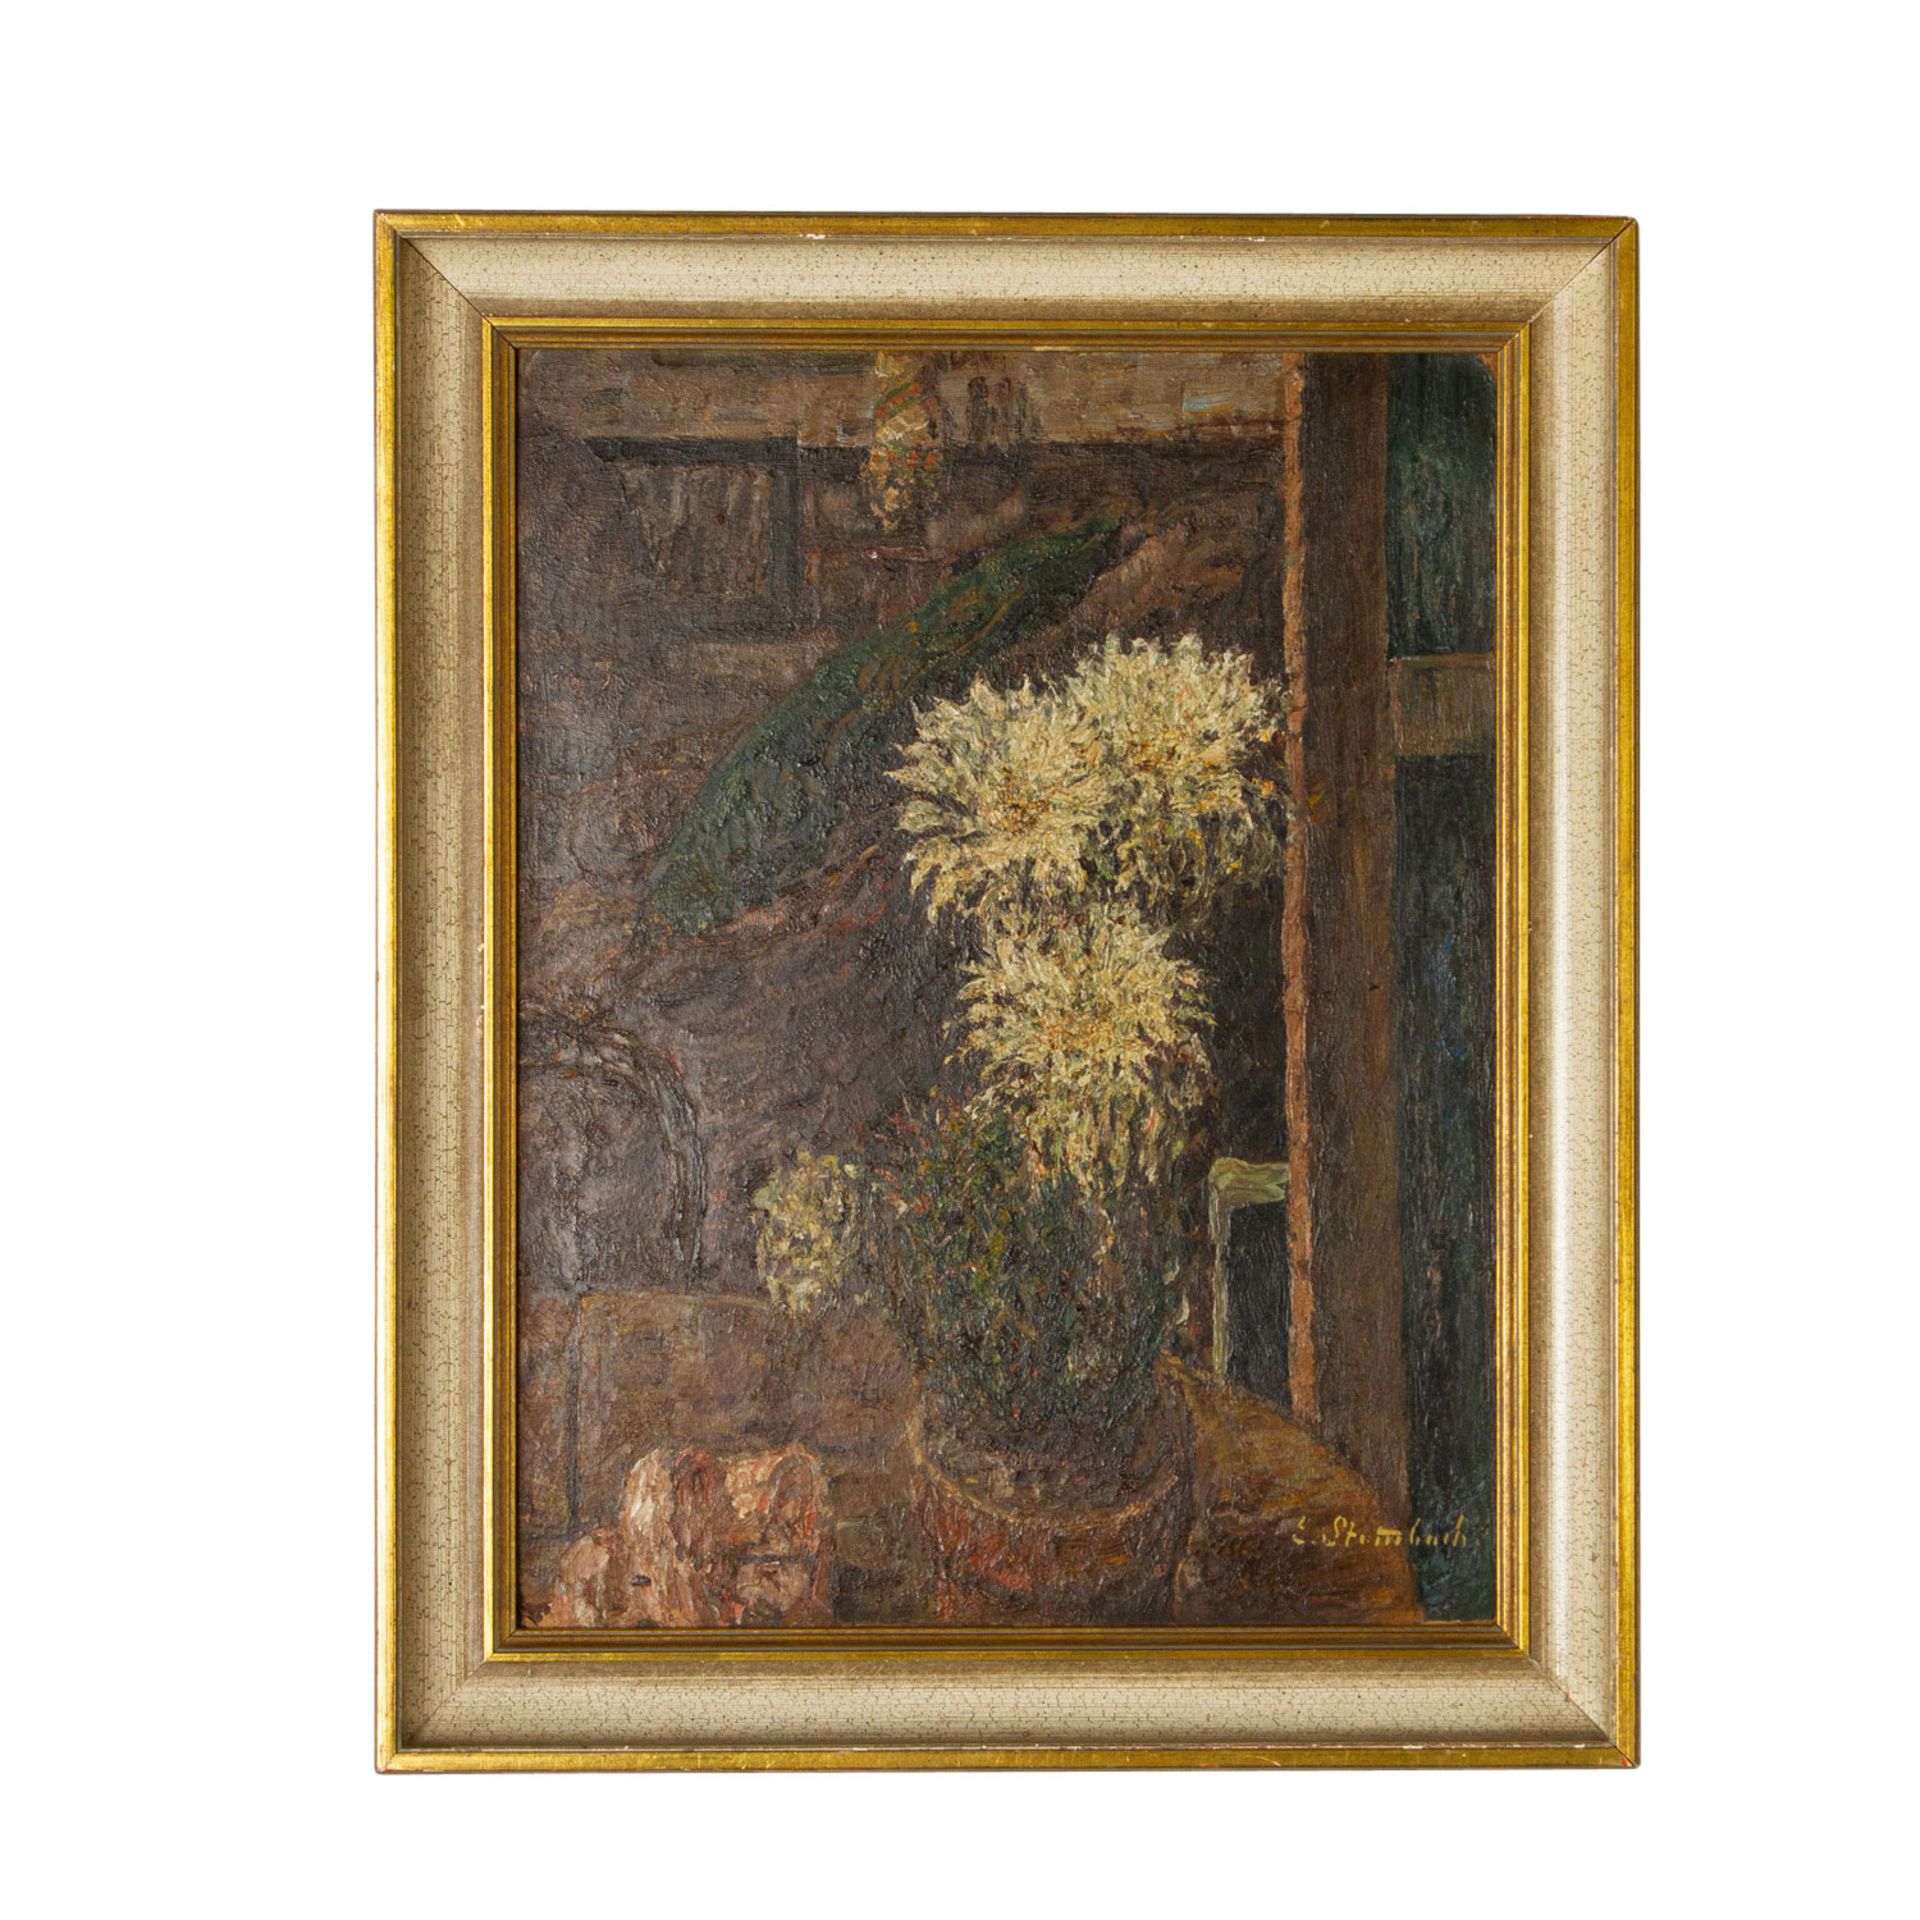 STAMMBACH, EUGEN (1875-1966), "Interieur mit blühendem Kaktus",